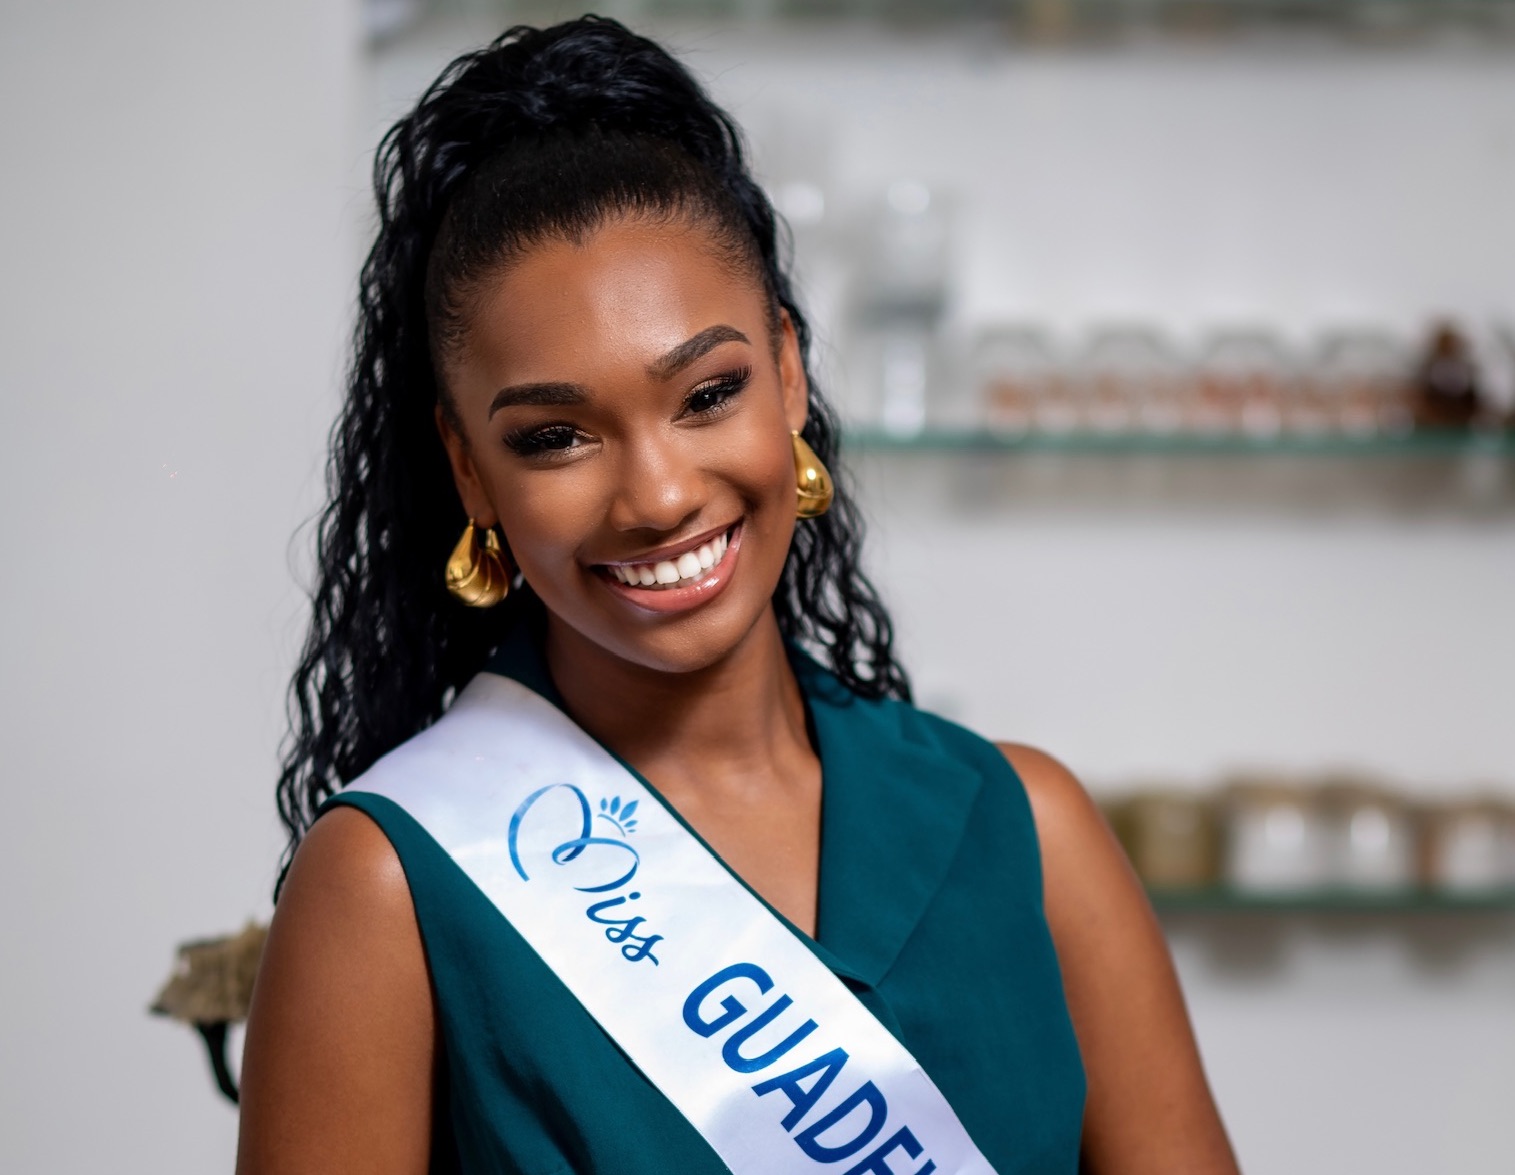     Jalylane Maës, Miss Guadeloupe, s’engage pour l’insertion professionnelle des jeunes

